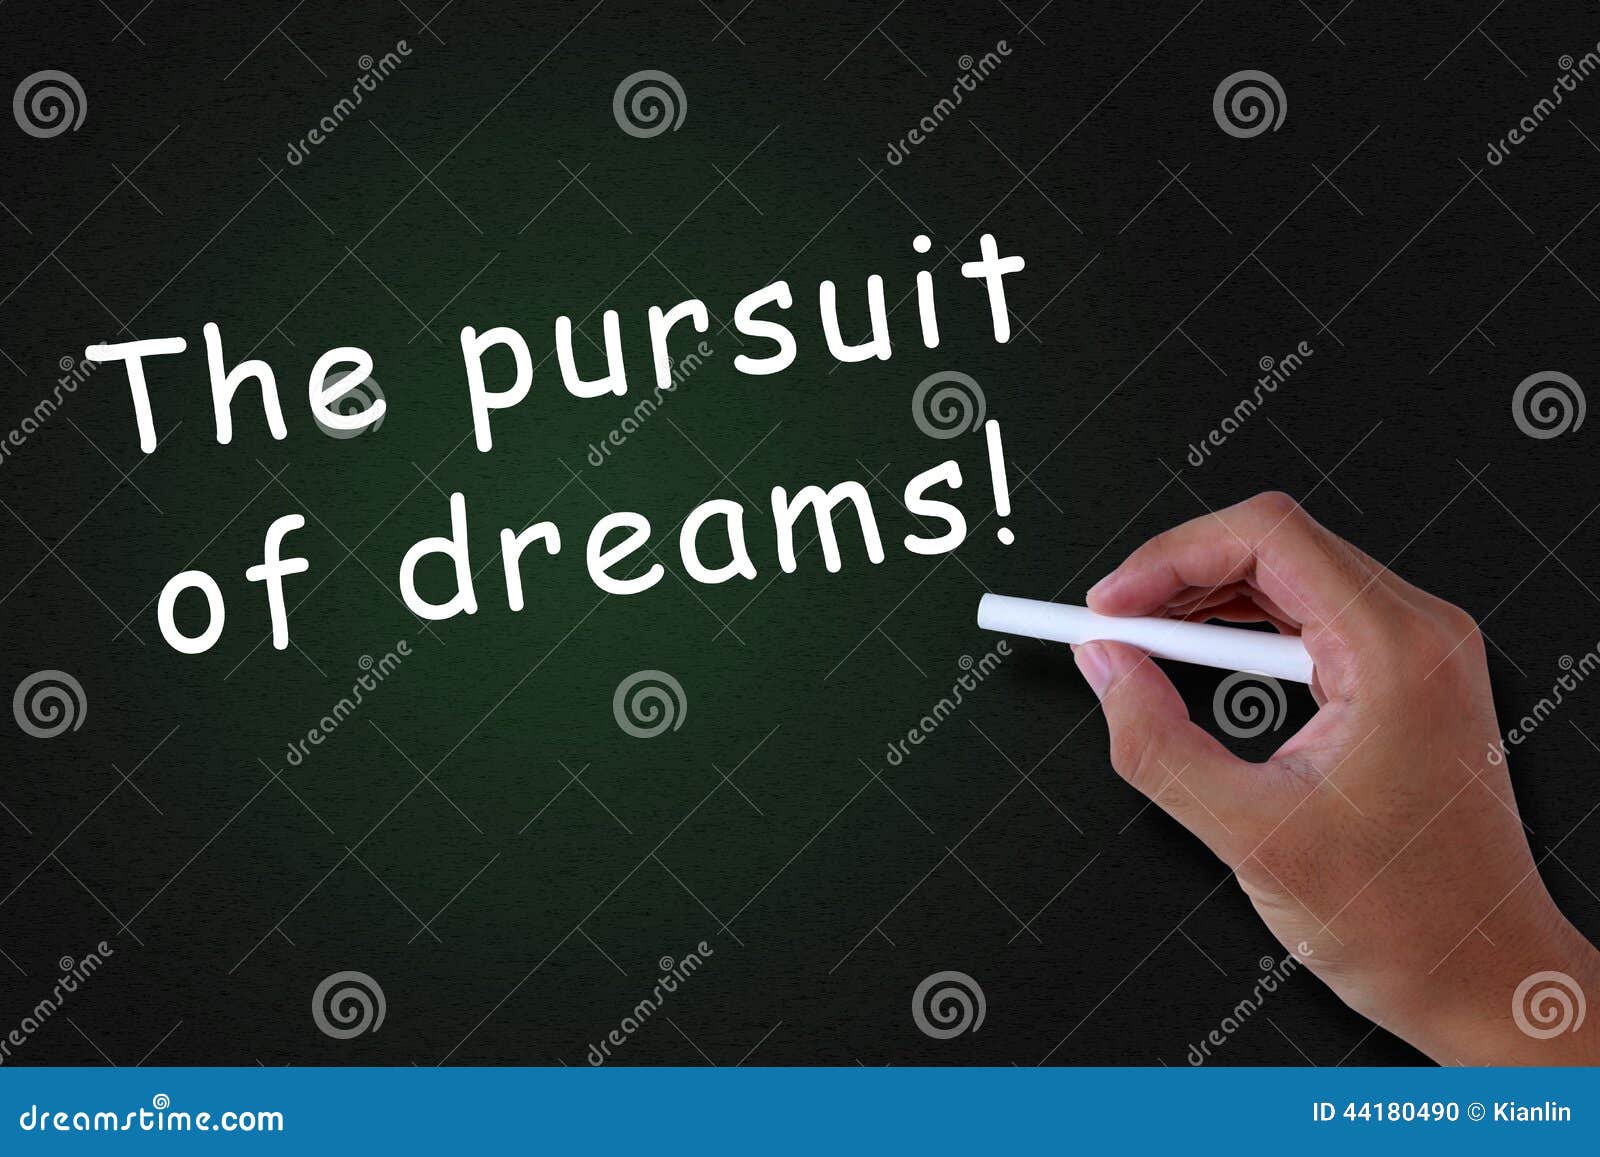 the pursuit of dreams